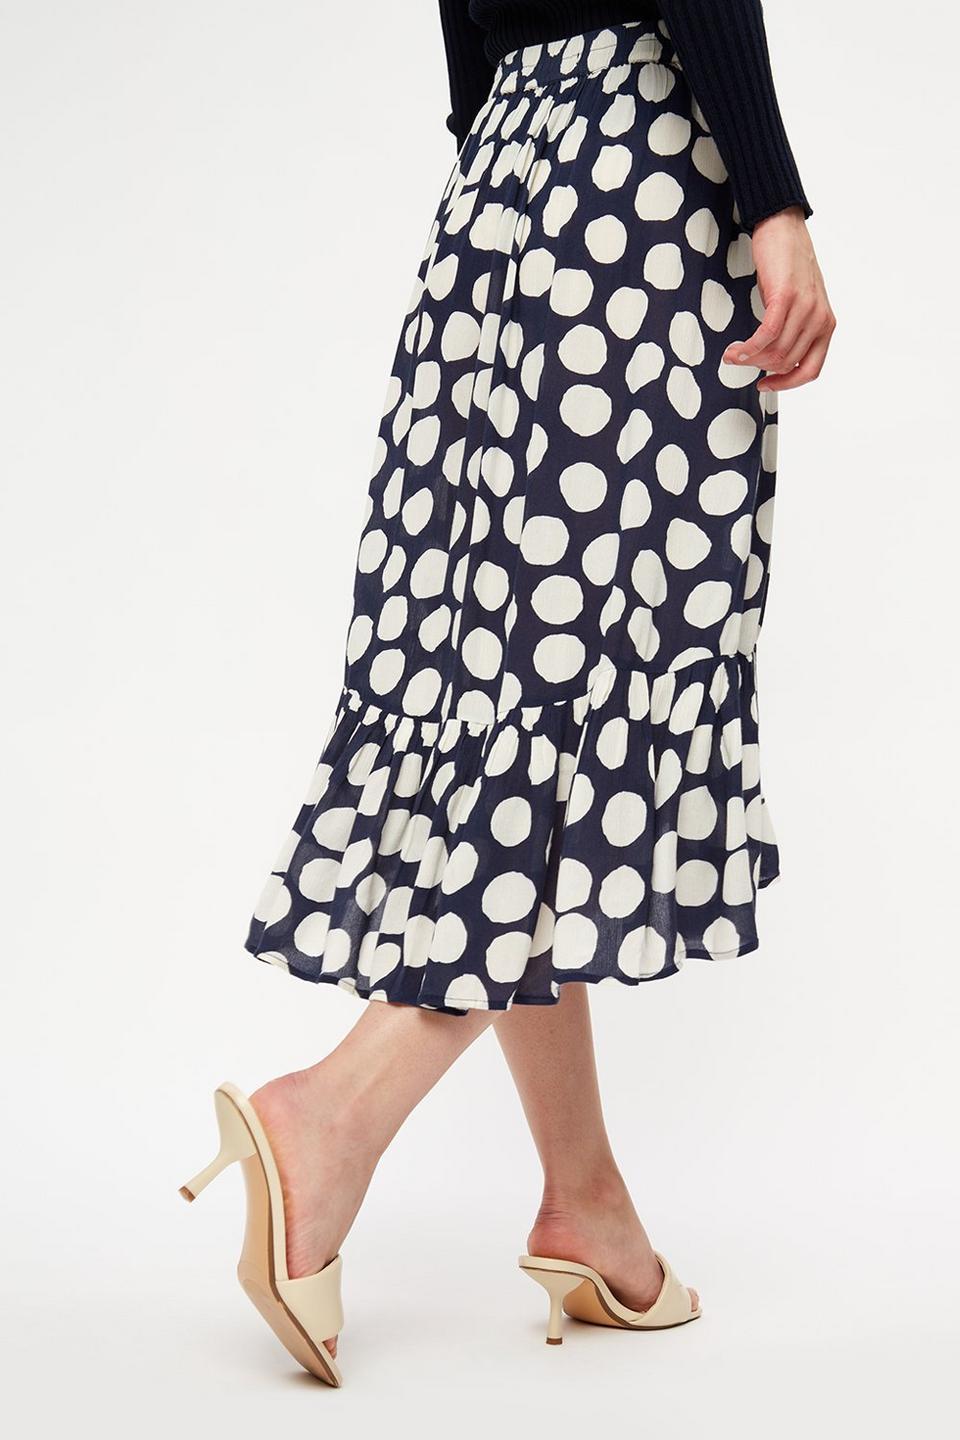 Skirts | Navy Spot Crinkle Frill Wrap Midi Skirt | Dorothy Perkins